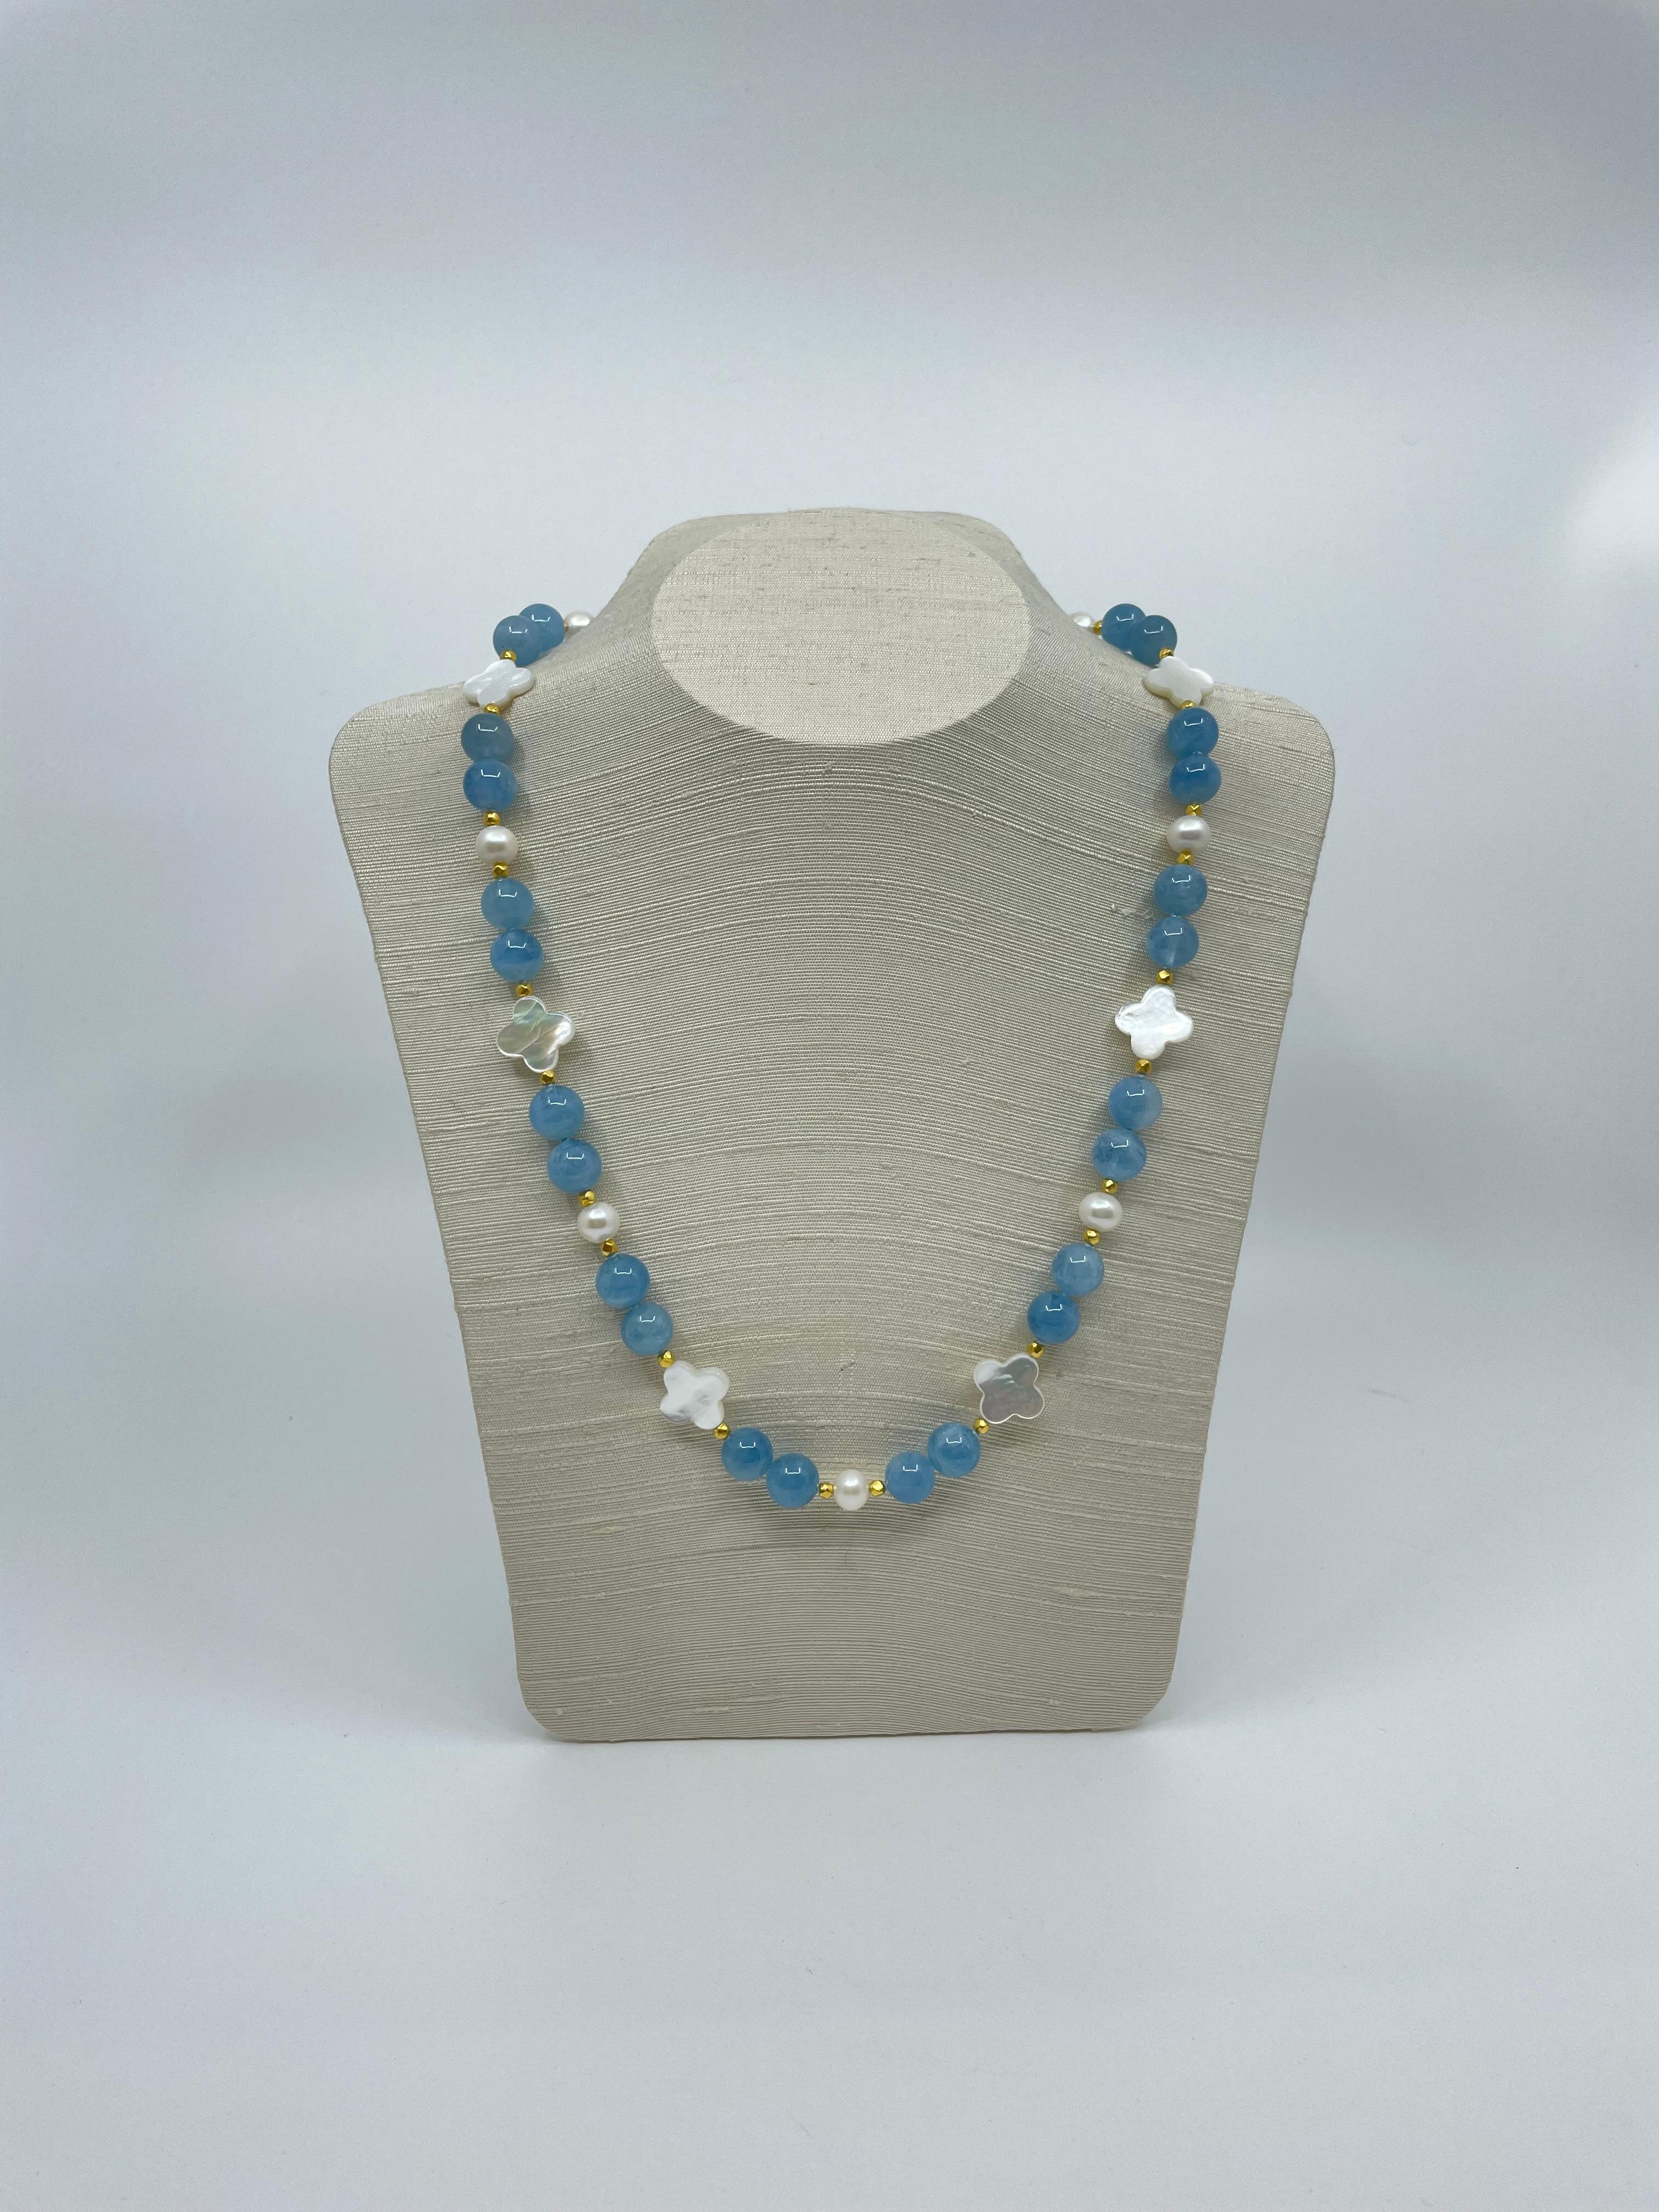 La couleur bleue intense des perles d'aigue-marine est accentuée par les perles de nacre quadrilobées, les perles d'eau douce et les perles d'or à facettes 18k. Ce joli collier de 58,4 cm de long est idéal pour les jours et les nuits